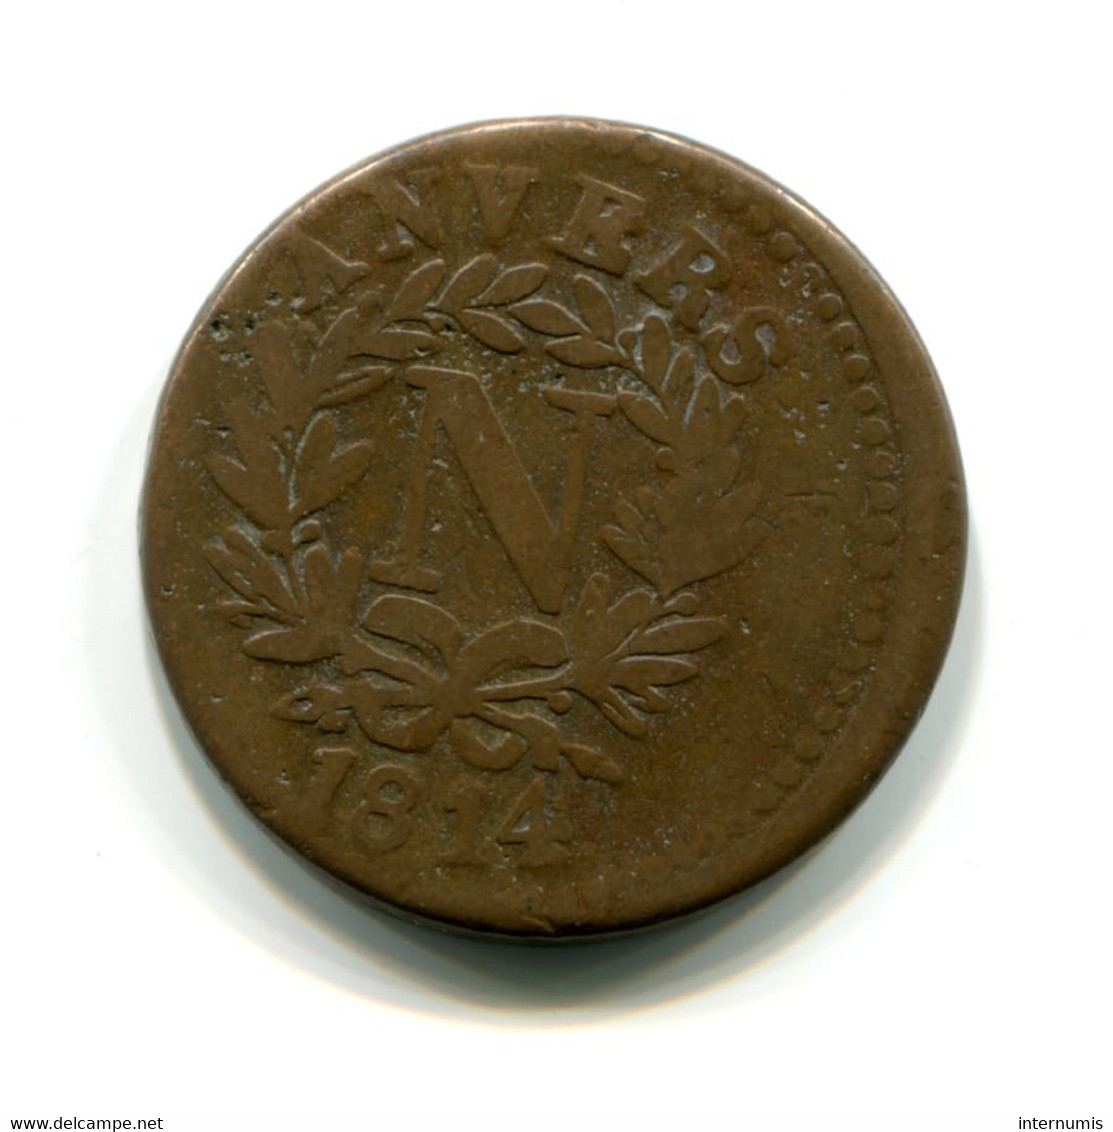 Belgique / Belgium, 5 Centimes, 1814, Siege D'Anvers - Napoléon, Bronze, ,KM#2, F.115?, G.129d, COL.11 - 1814 Siege Of Antwerp